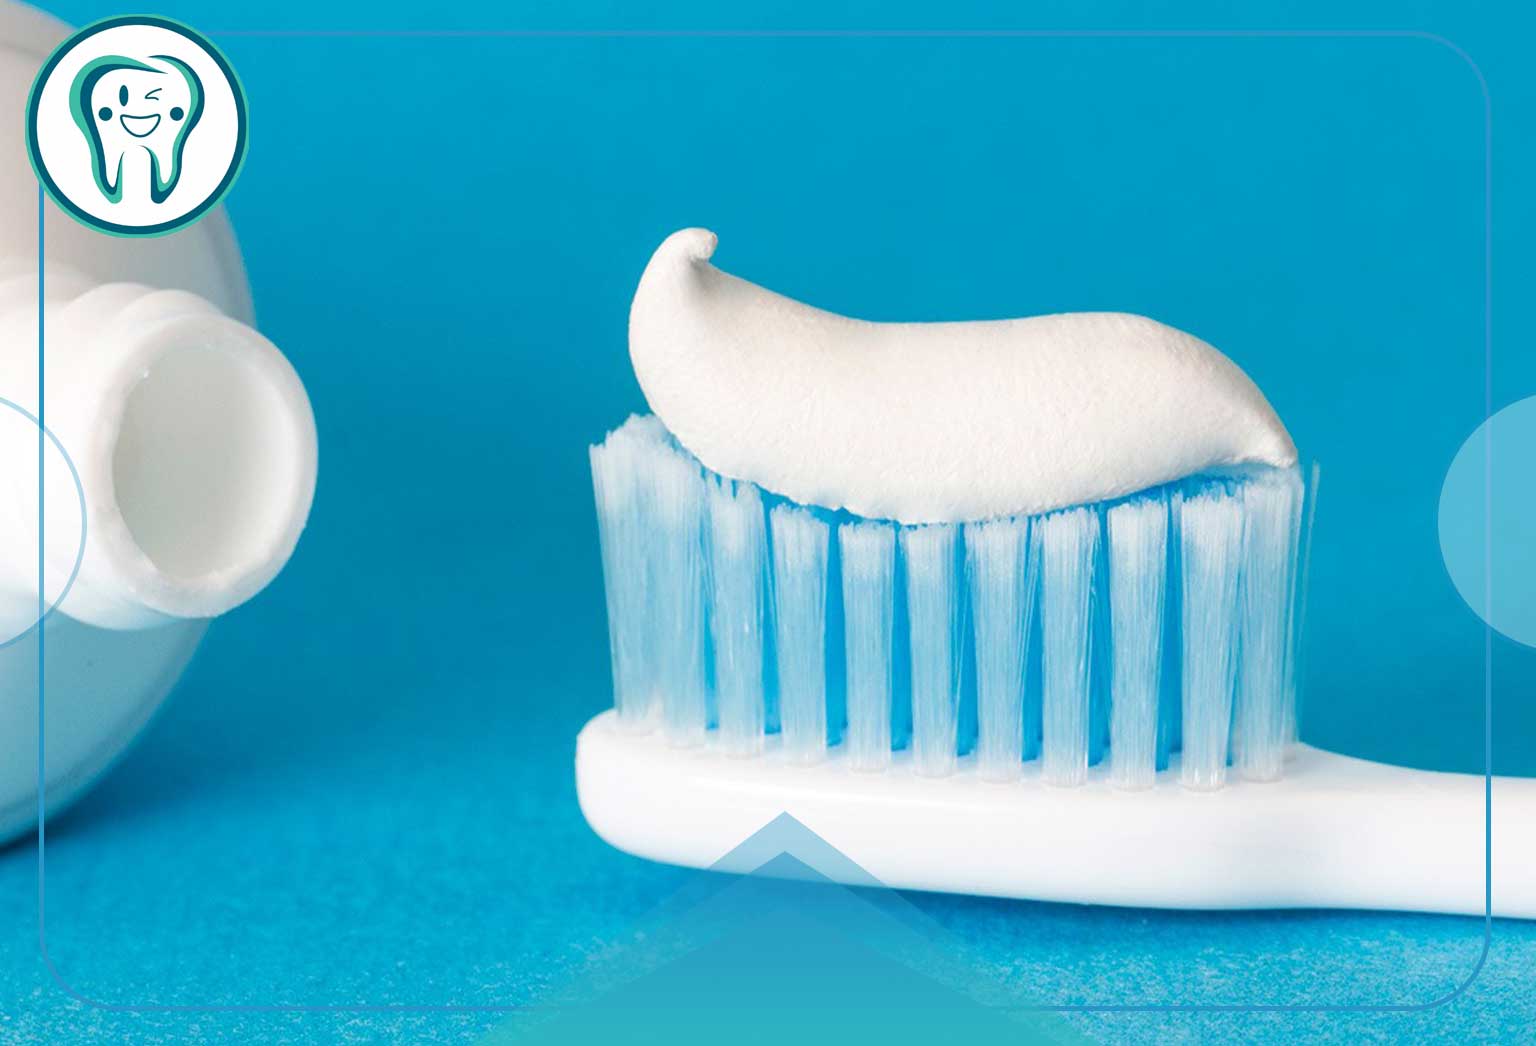 مسواک خود را به یک مسواک نرم تغییر دهید و از خمیر دندانی که برای دندان های حساس طراحی شده است استفاده کنید